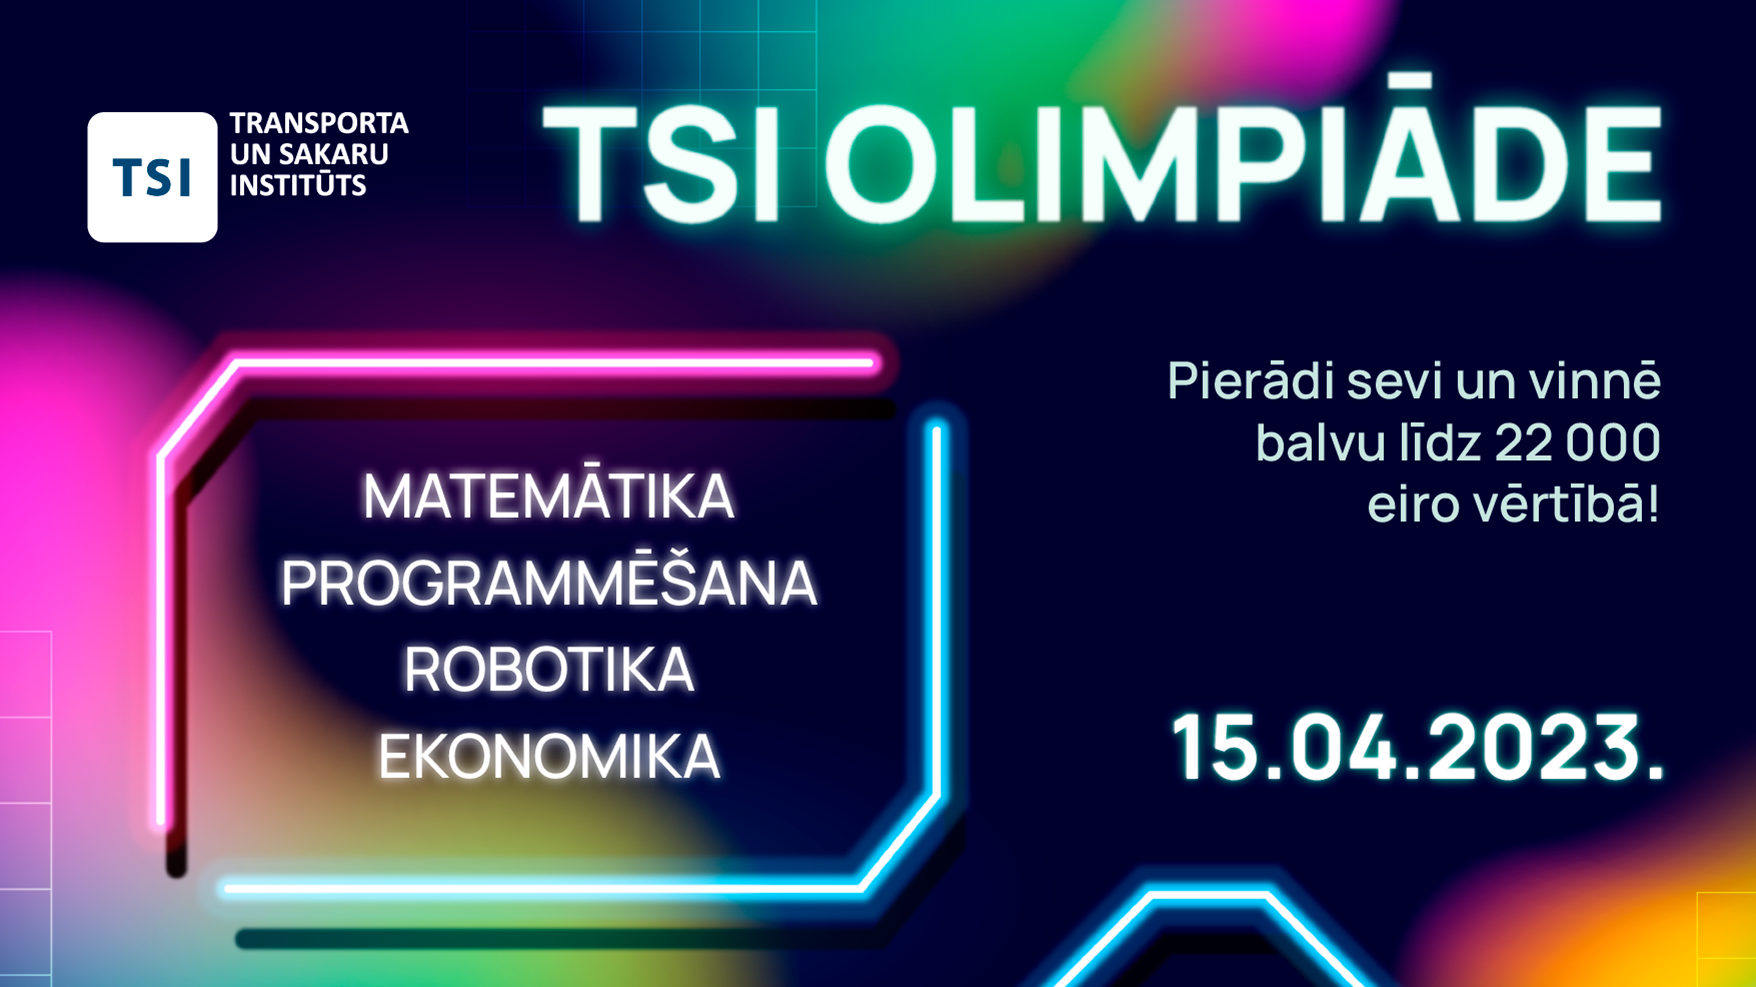 TSI Olimpiāde – galvenā balva apmaksātas studijas vērtībā līdz pat 22 000 eiro!